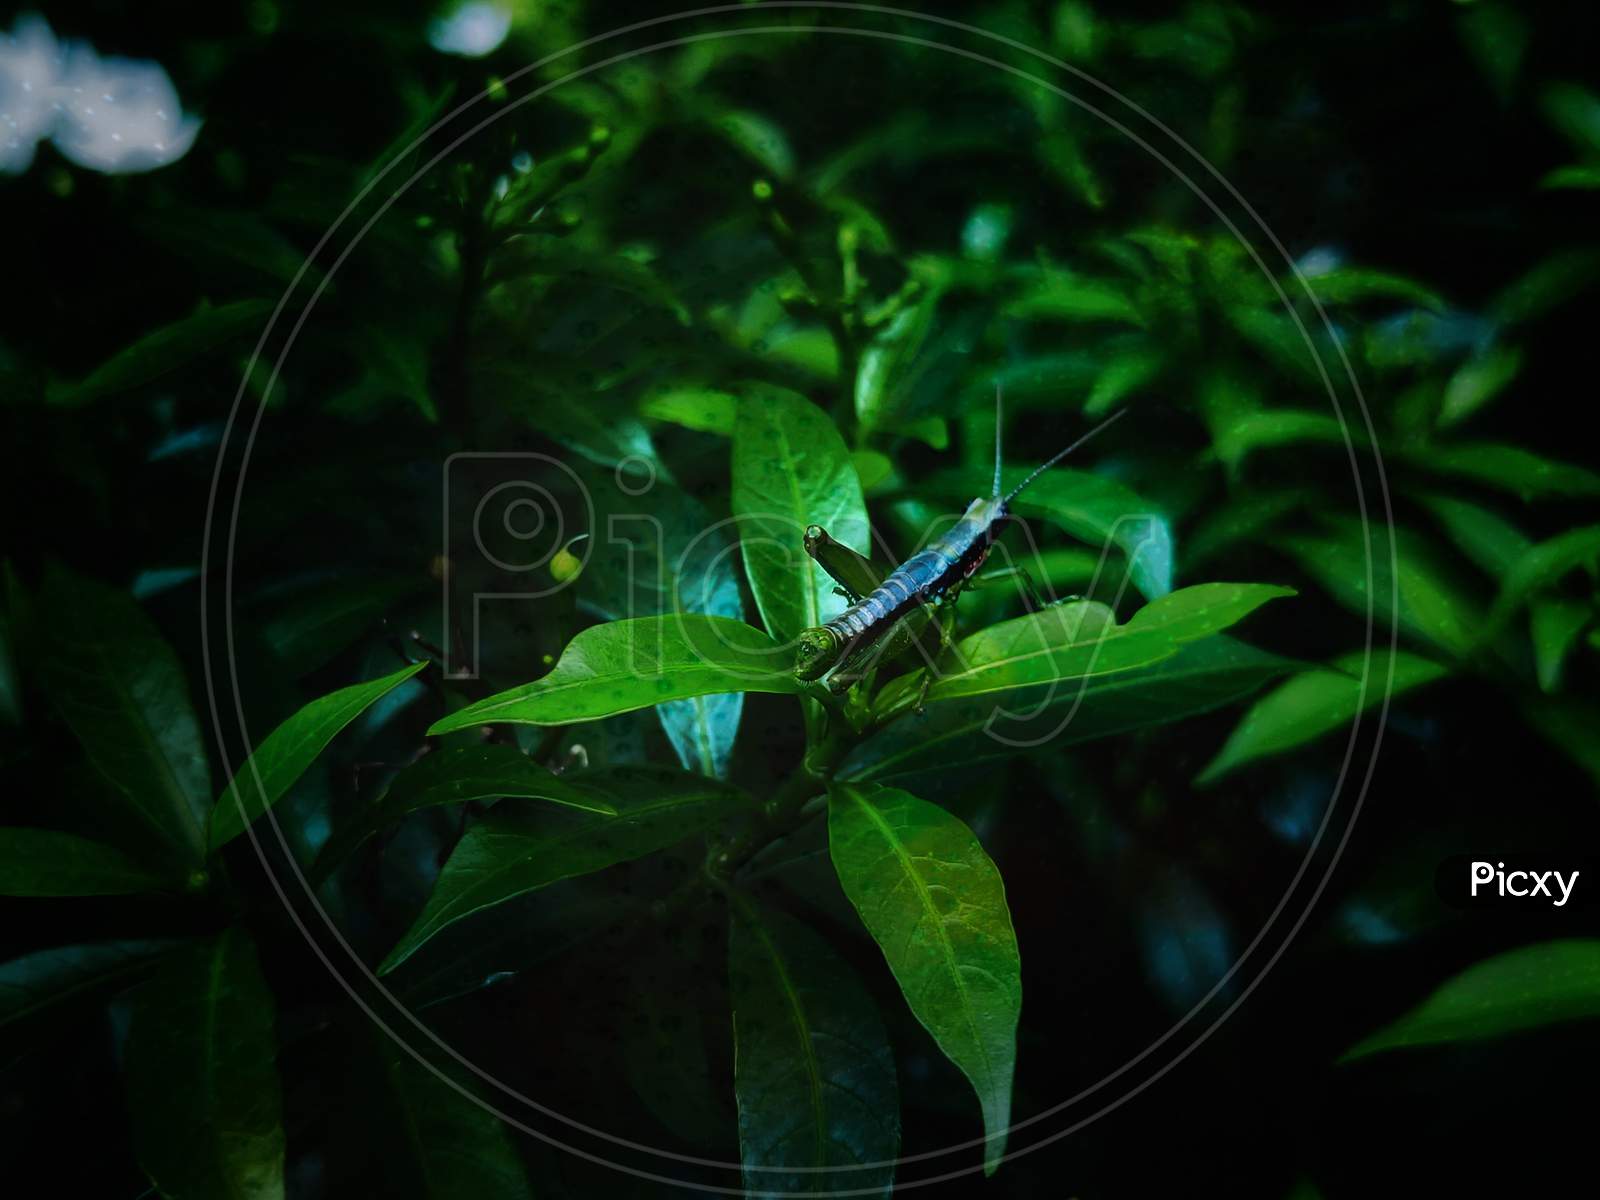 Grasshopper on the green leaves